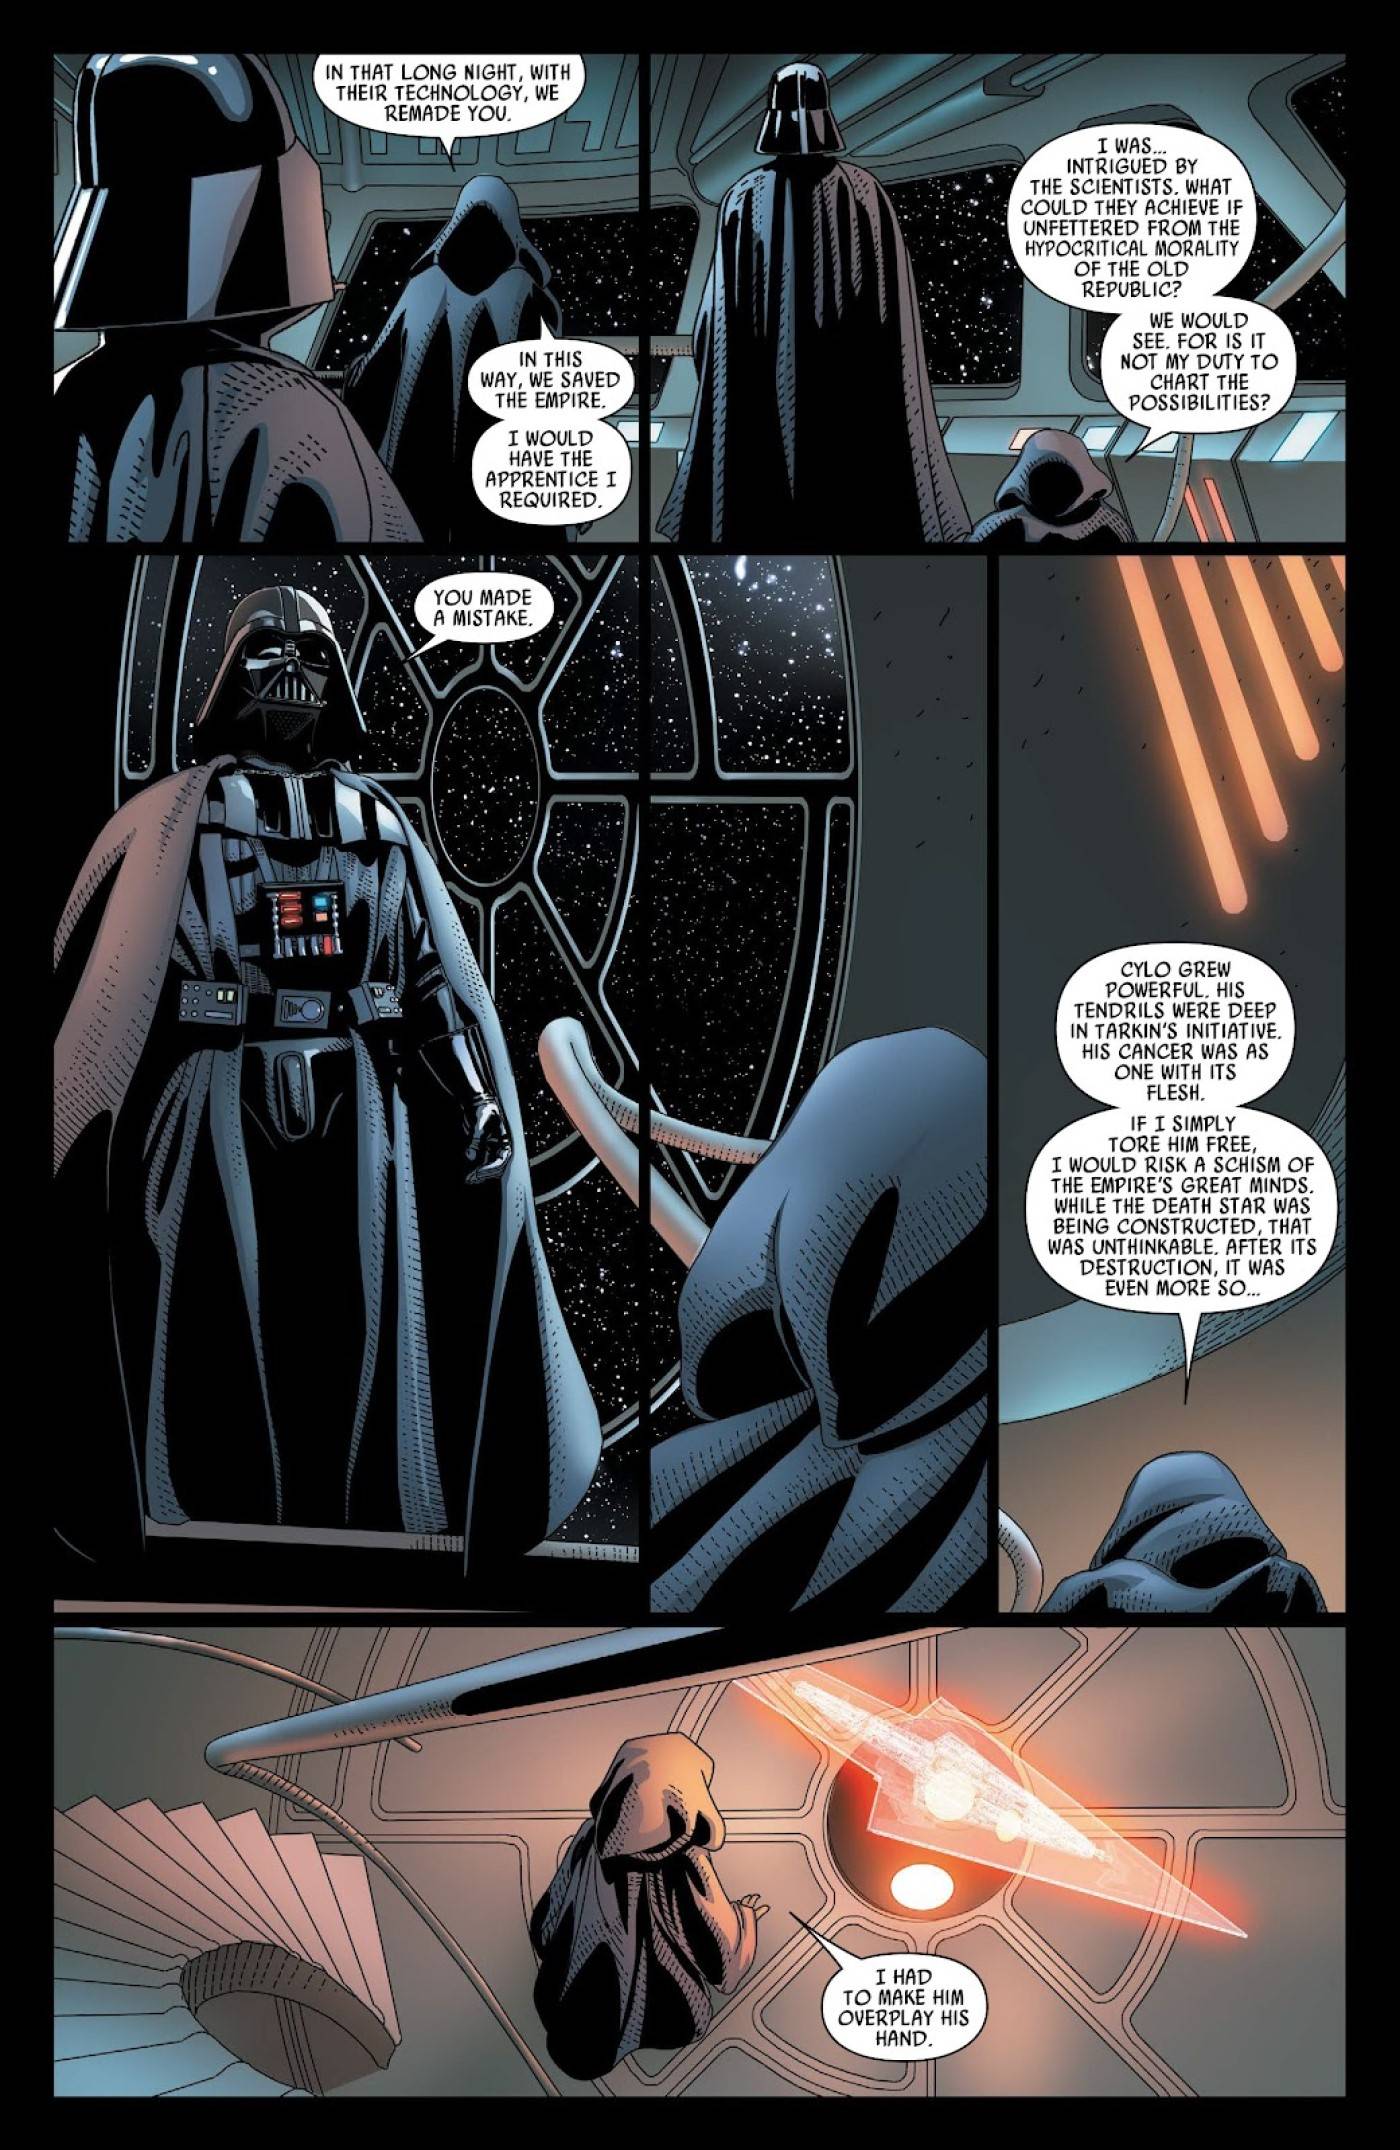 Palpatine e Vader falando.